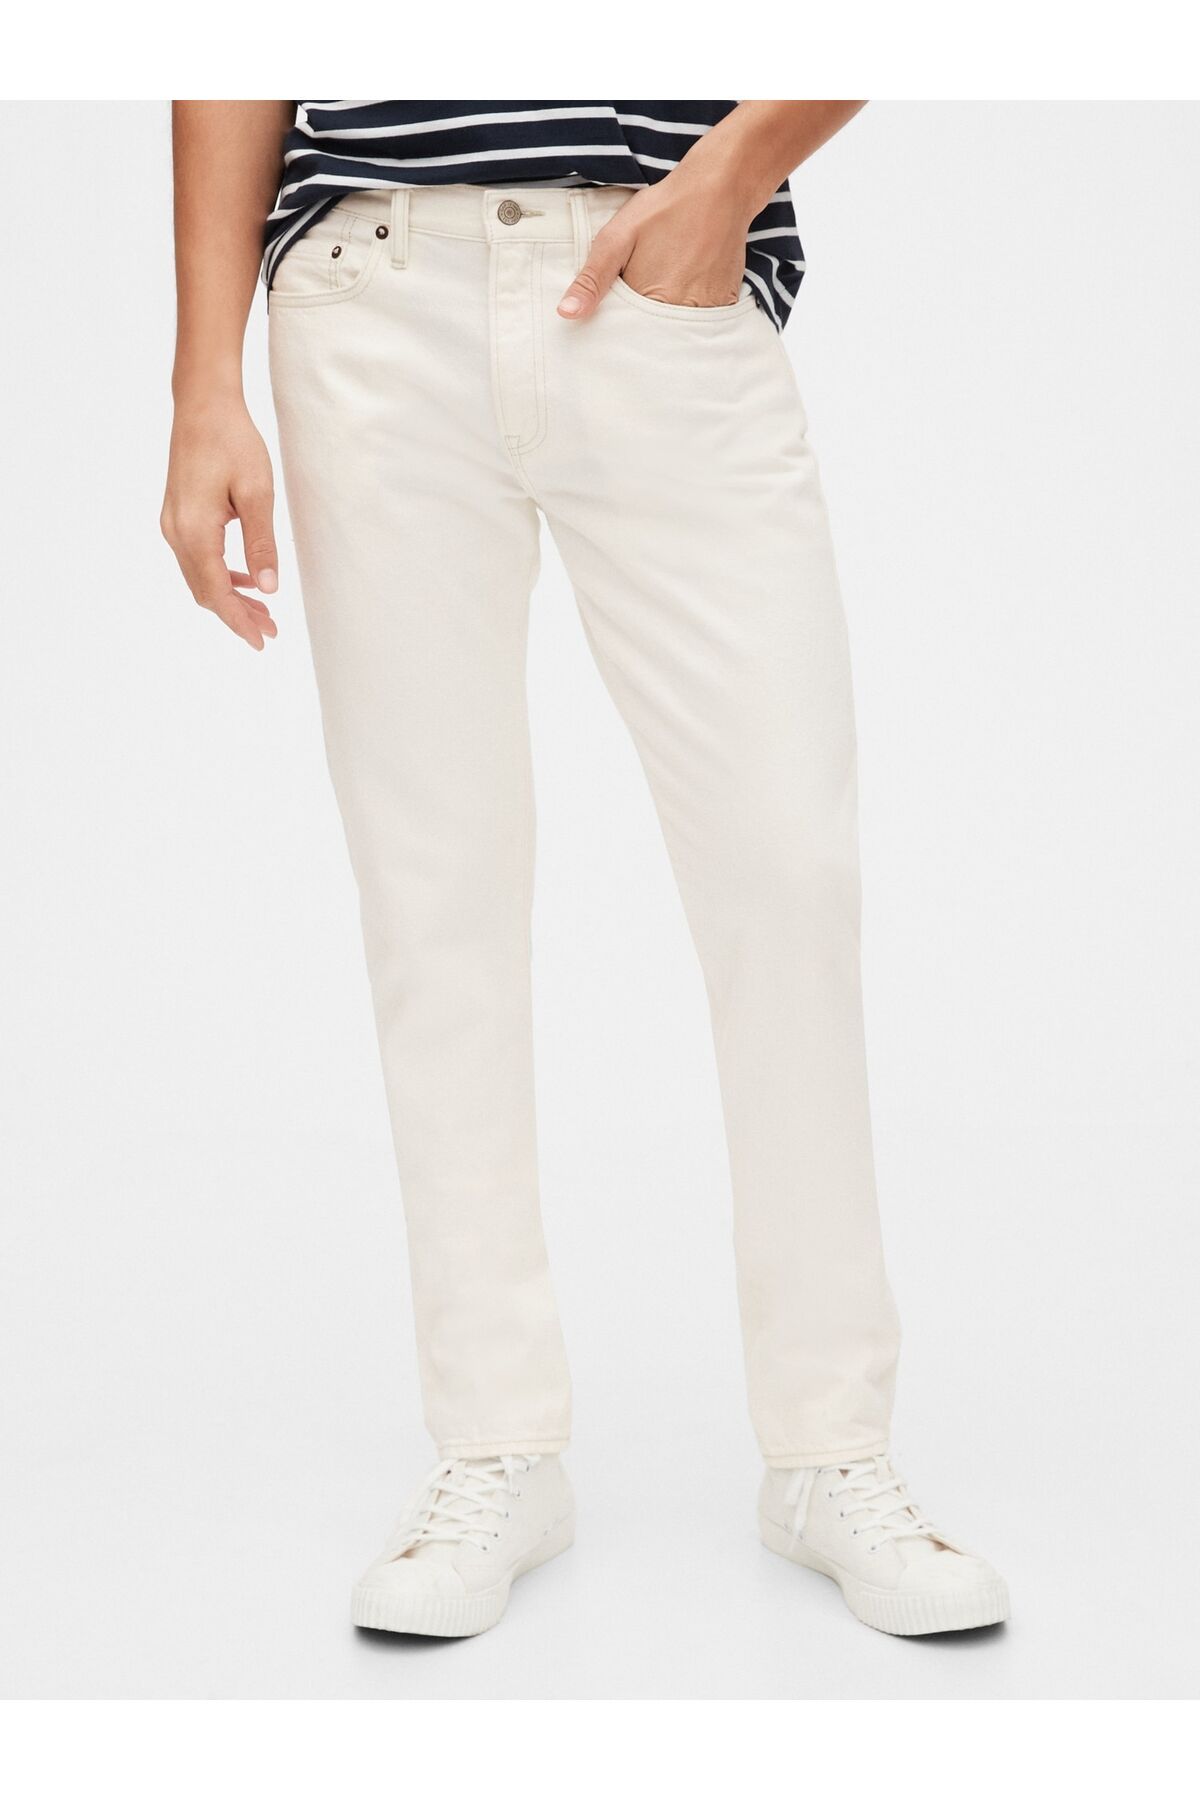 GAP Erkek Beyaz Vintage Yıkamalı Slim Jean Pantolon